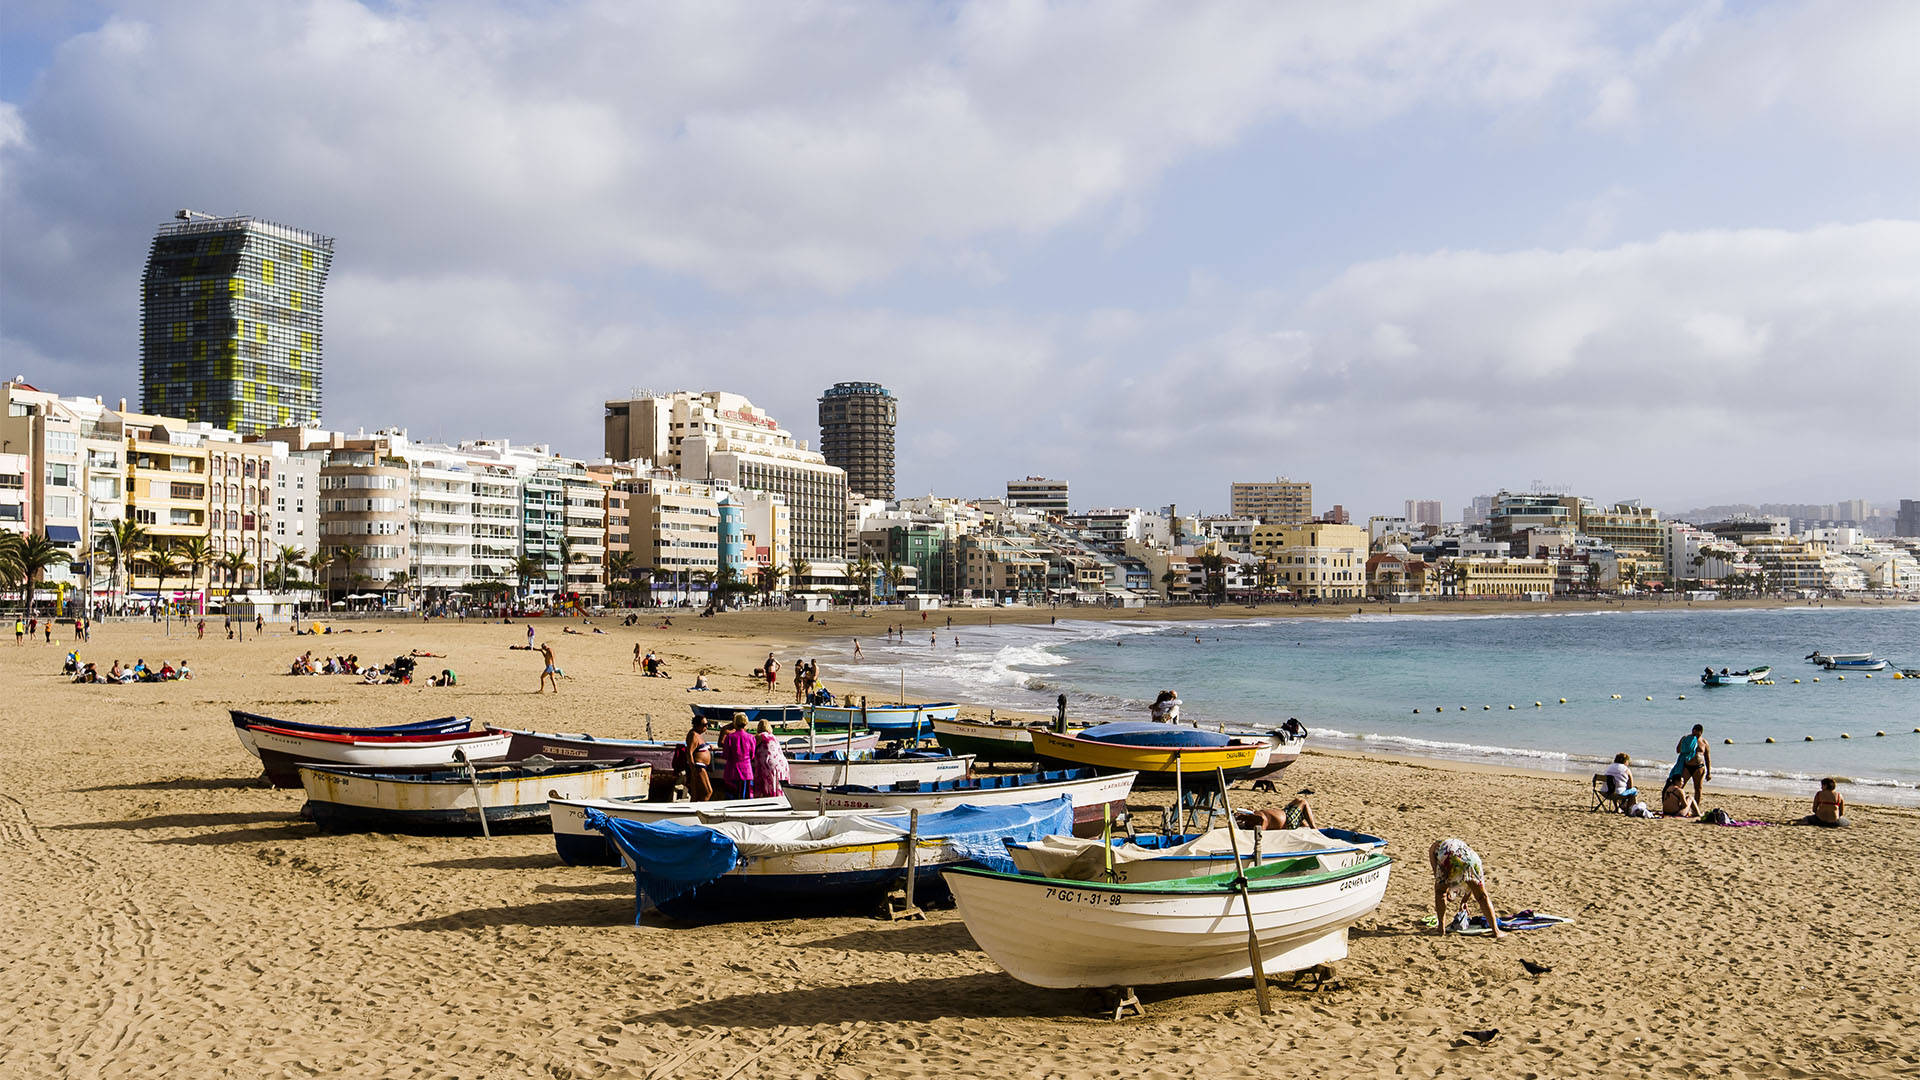 Die Standbewohner von Las Palmas lieben ihren Strand. Entspannt vermischen sich Fischer, Städter, Surfer, Touristen, Sportler und mehr zu einem harmonischen Ganzen. Entspannt ruhig geht es zu.